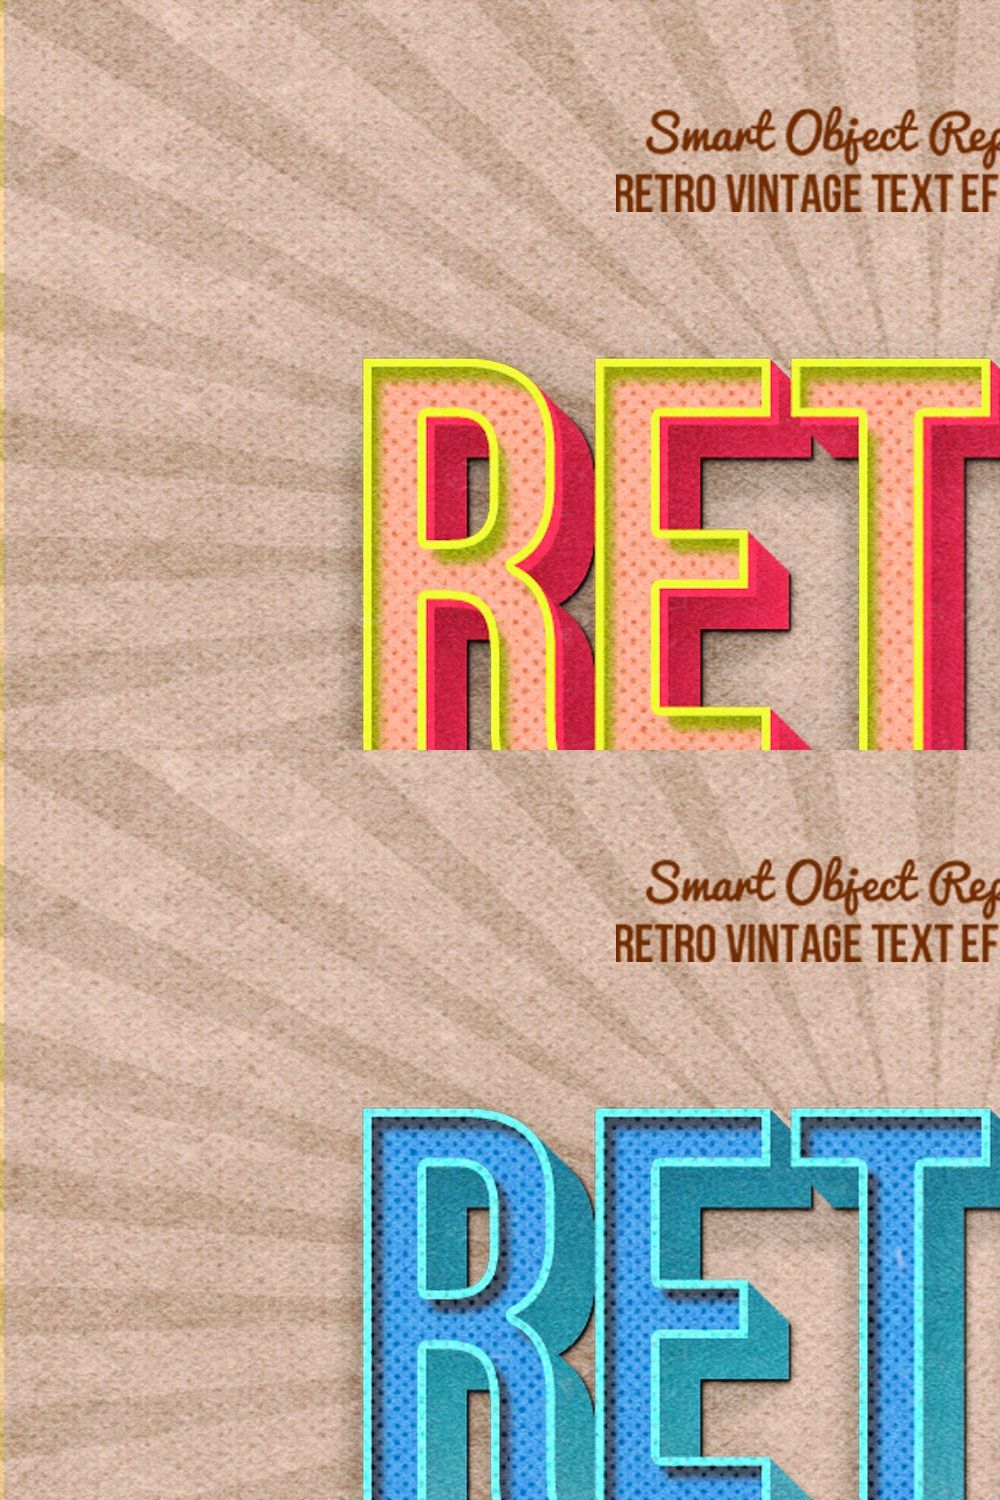 10 Retro Vintage Text Effect pinterest preview image.